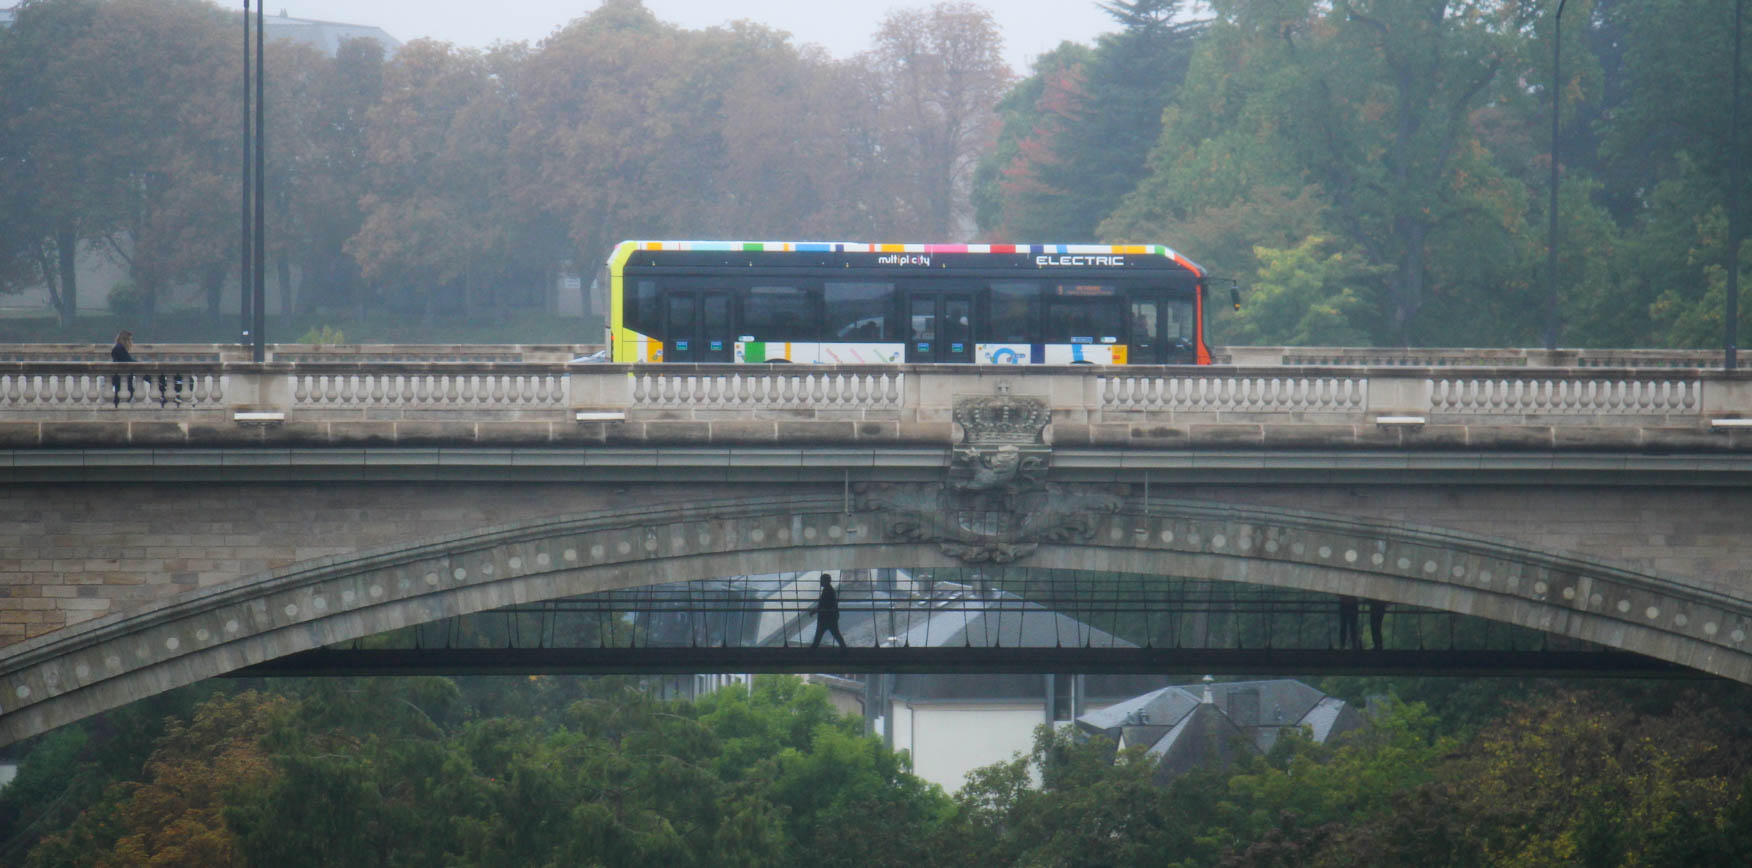 L'un des nombreux bus électrique de Luxembourg-ville. Photo : LR